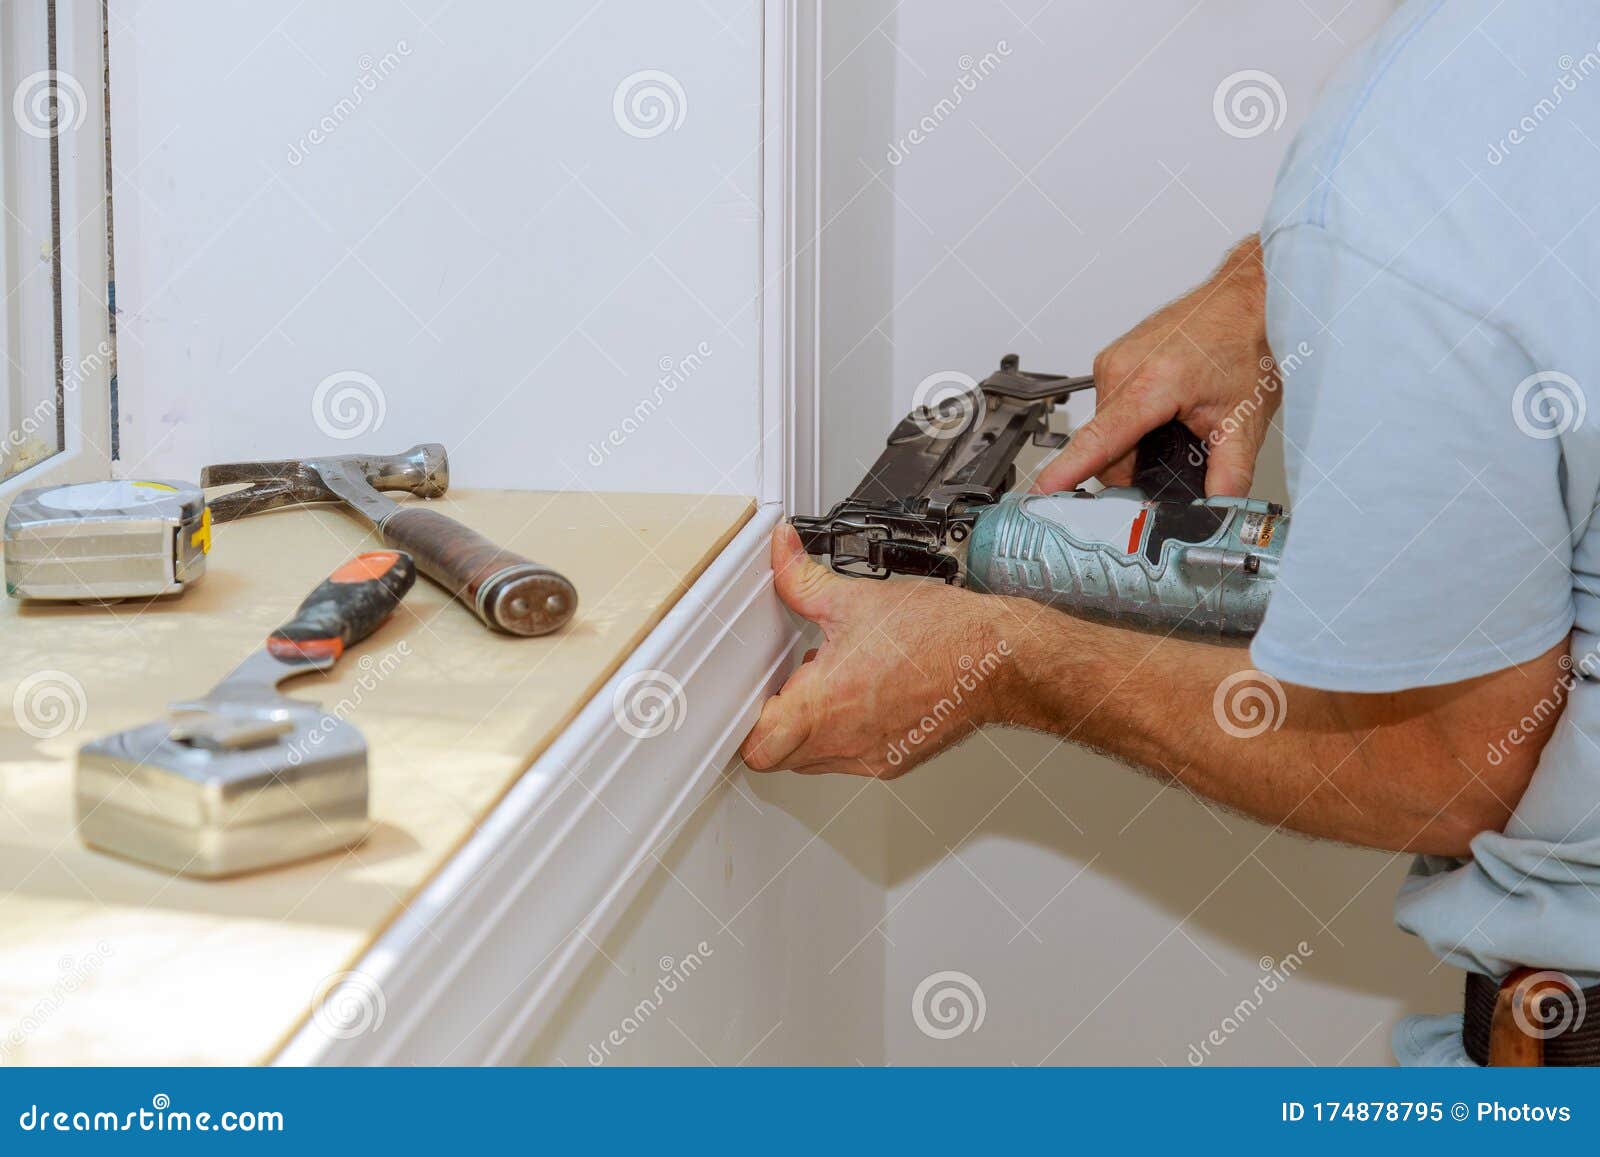 worker installing trim around a window